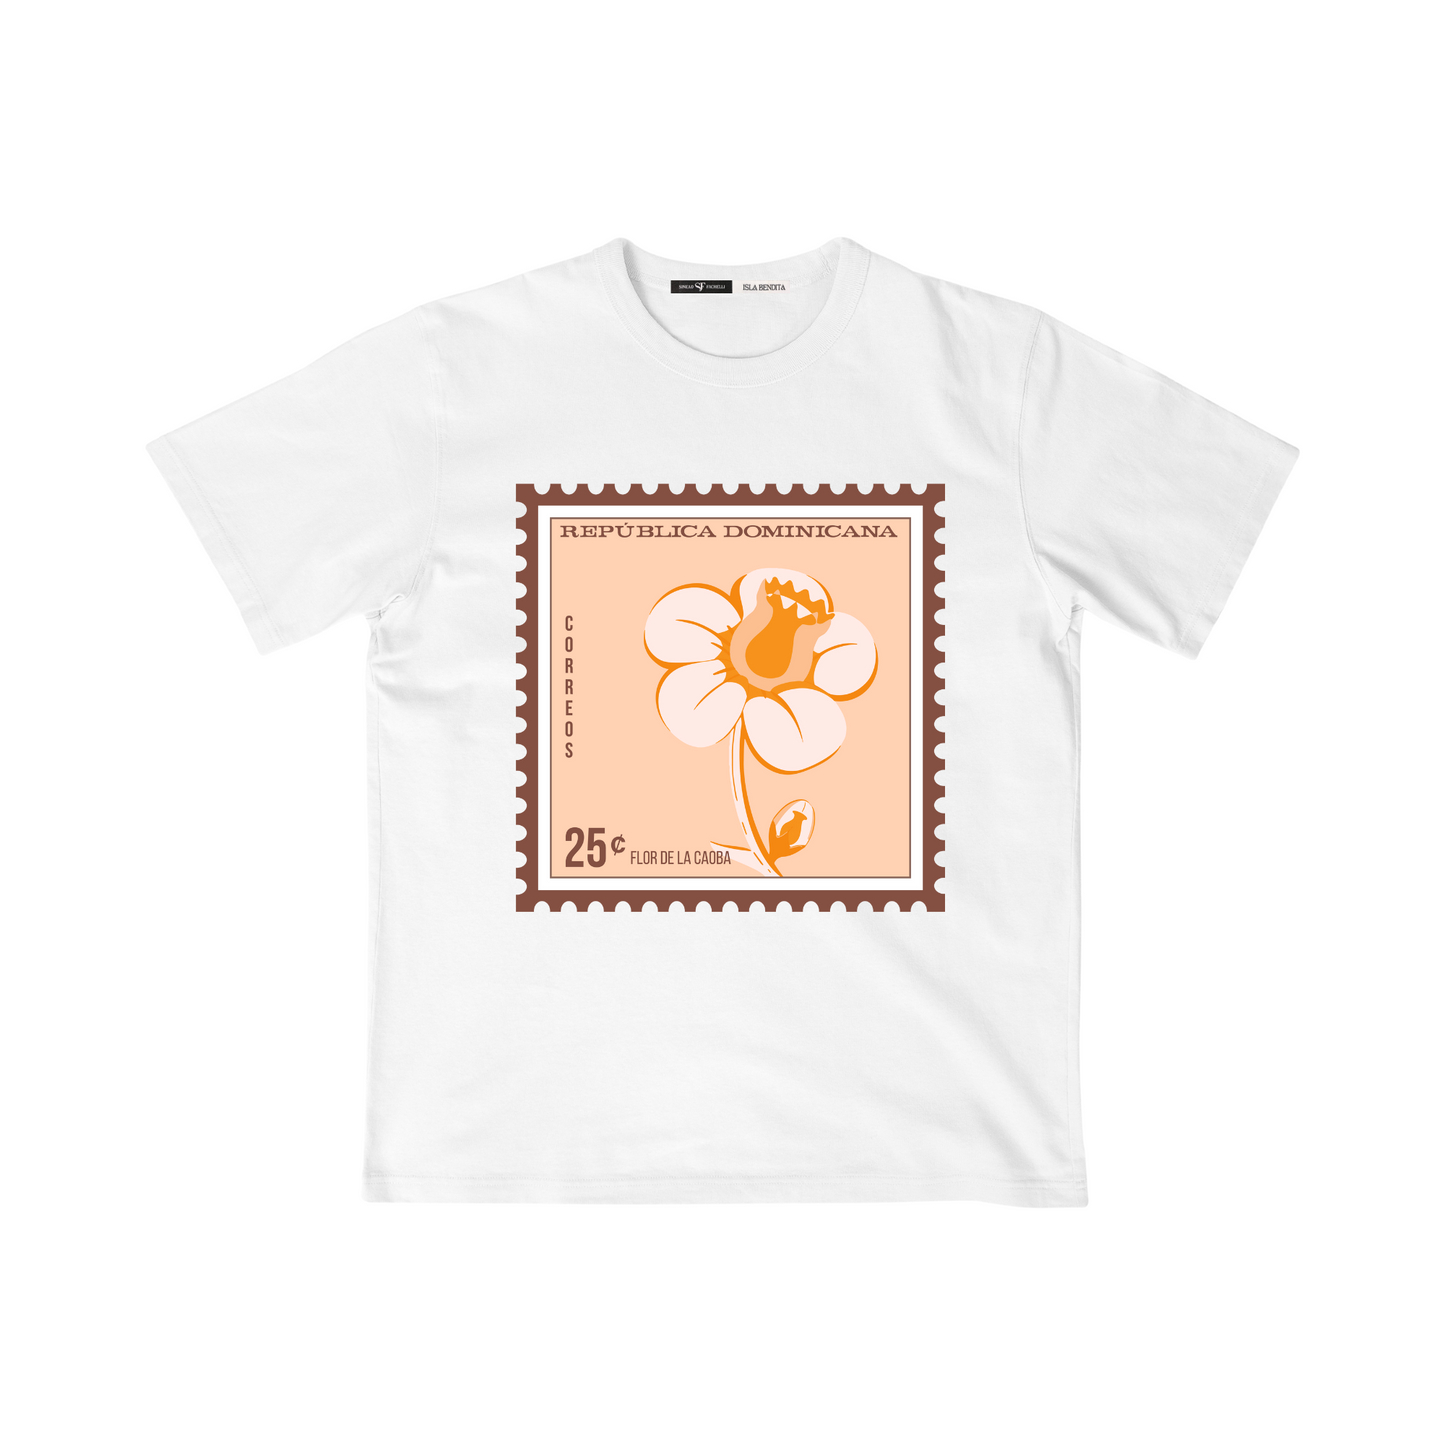 t-shirt flor de la caoba souvenir dominicano